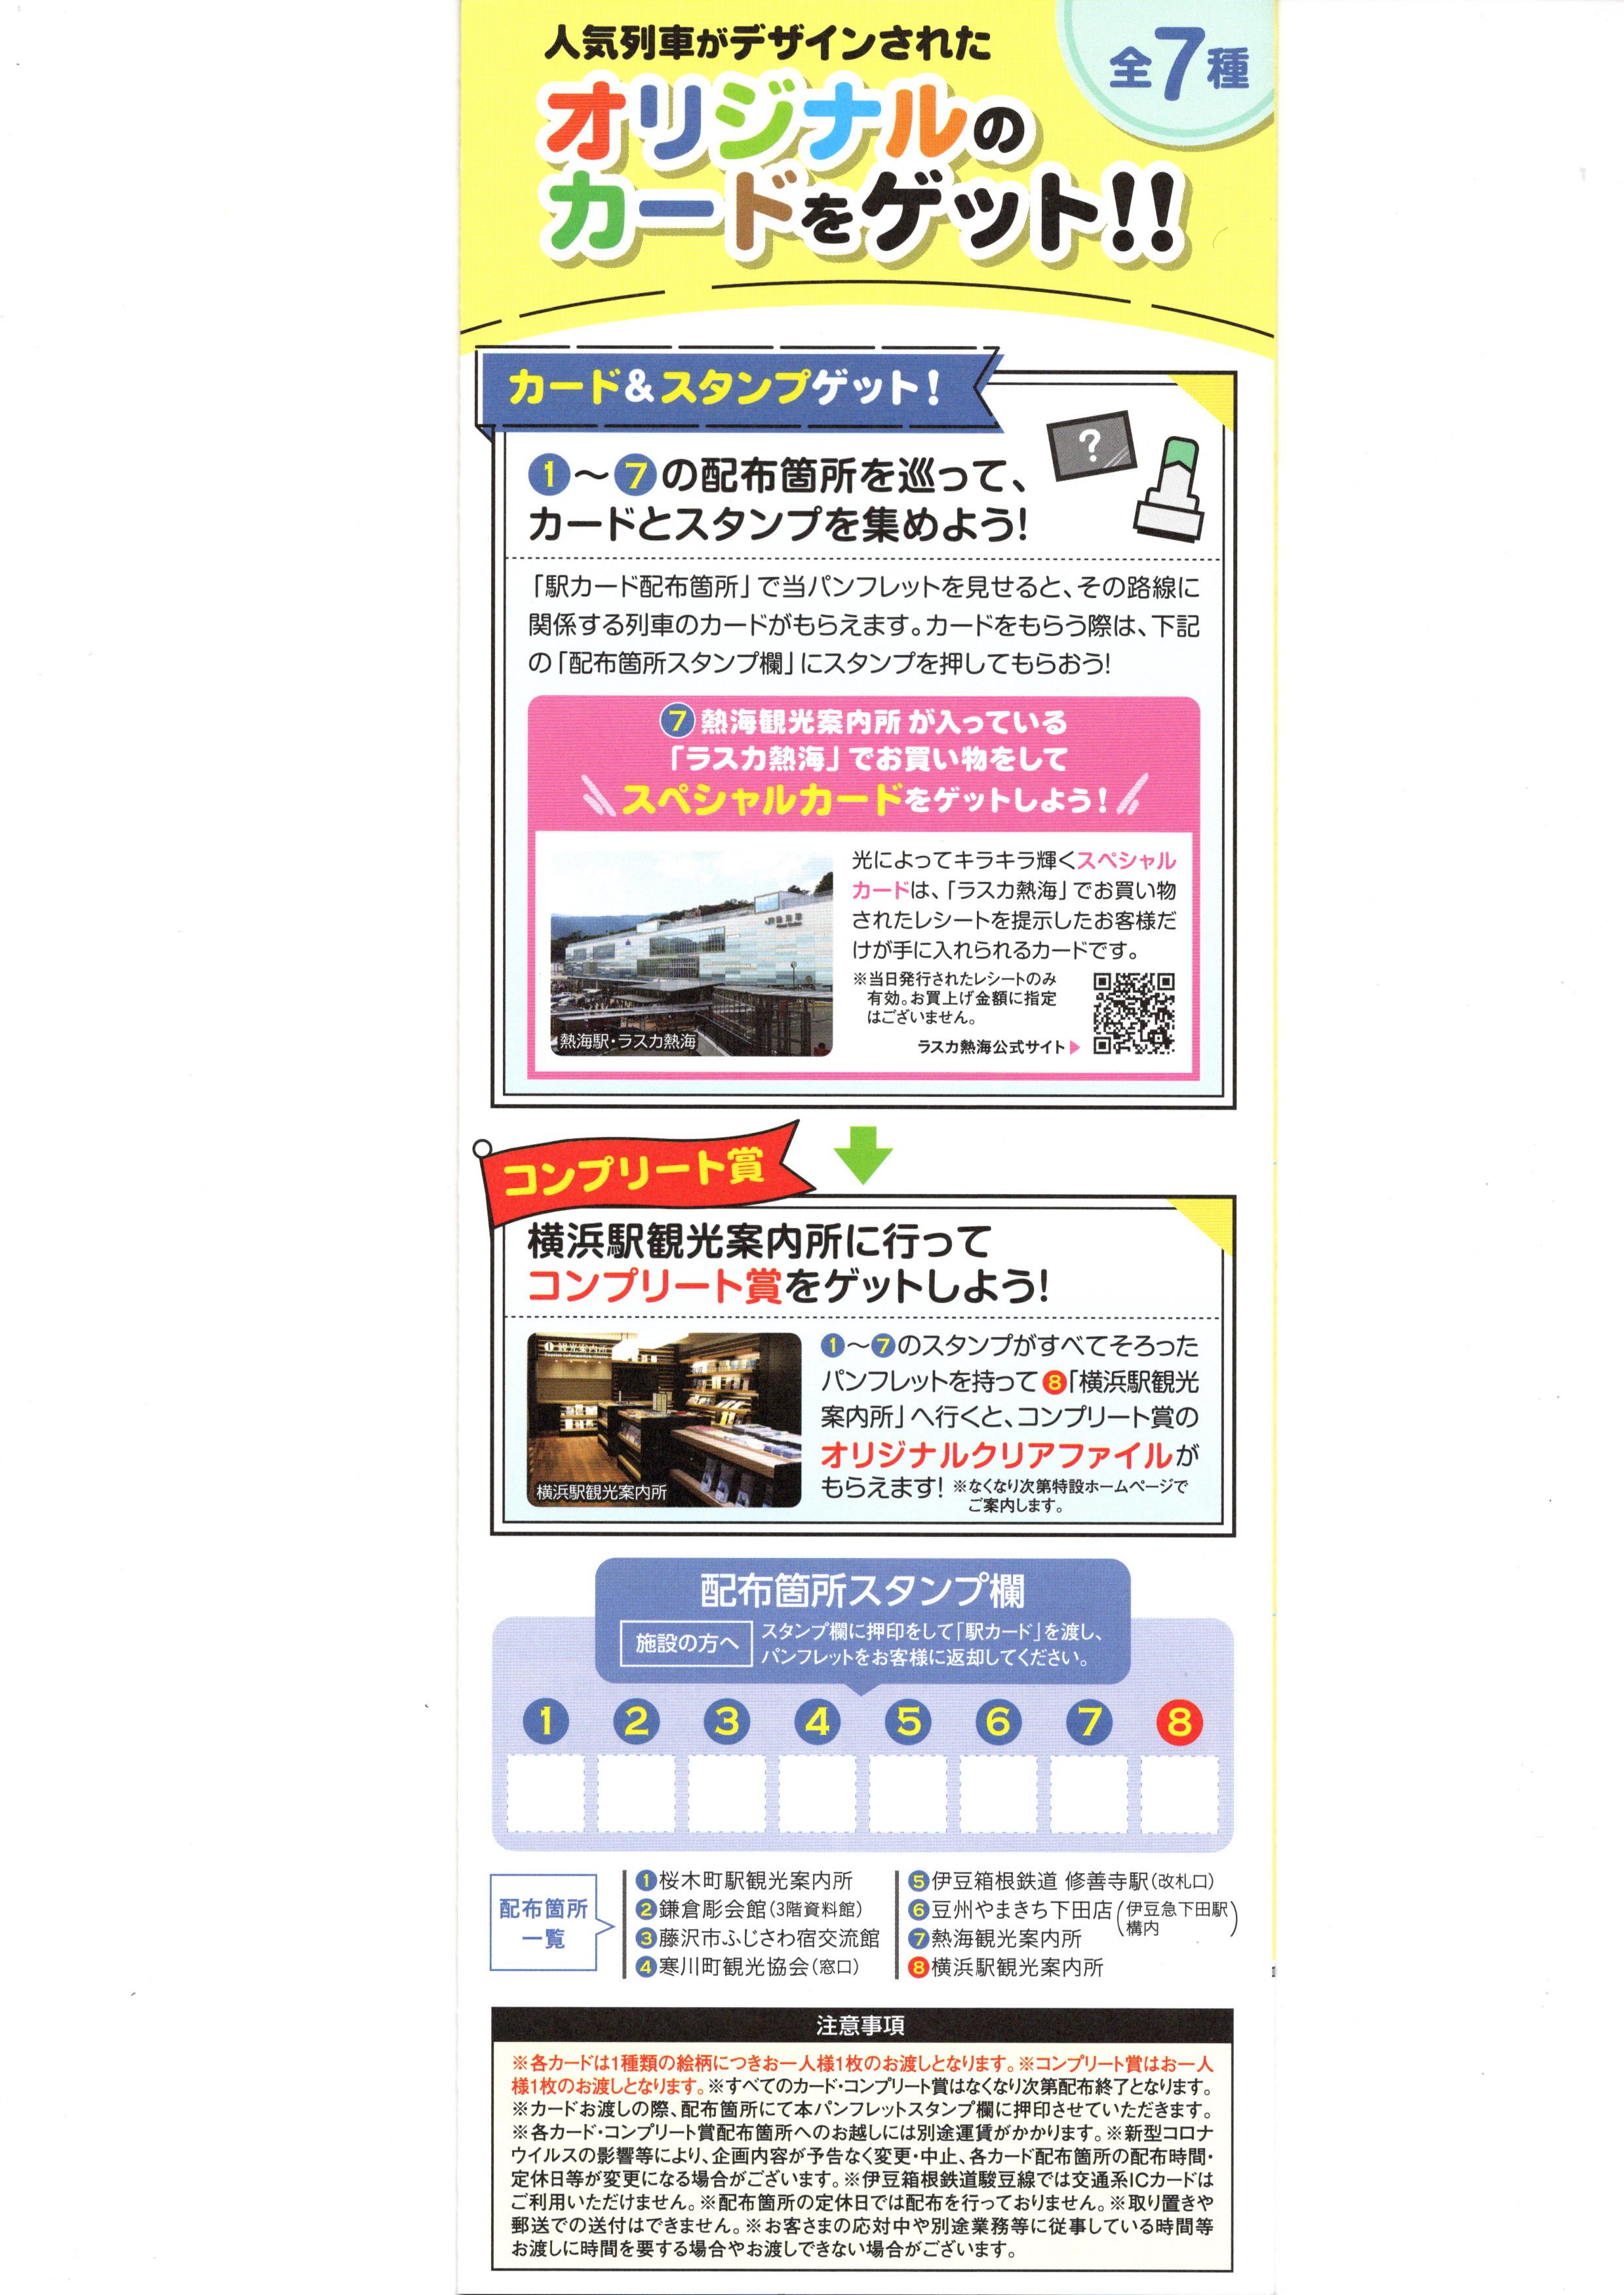 横浜支社「駅カード」第２弾が、2022-1-13から開始します | さんちゃん 